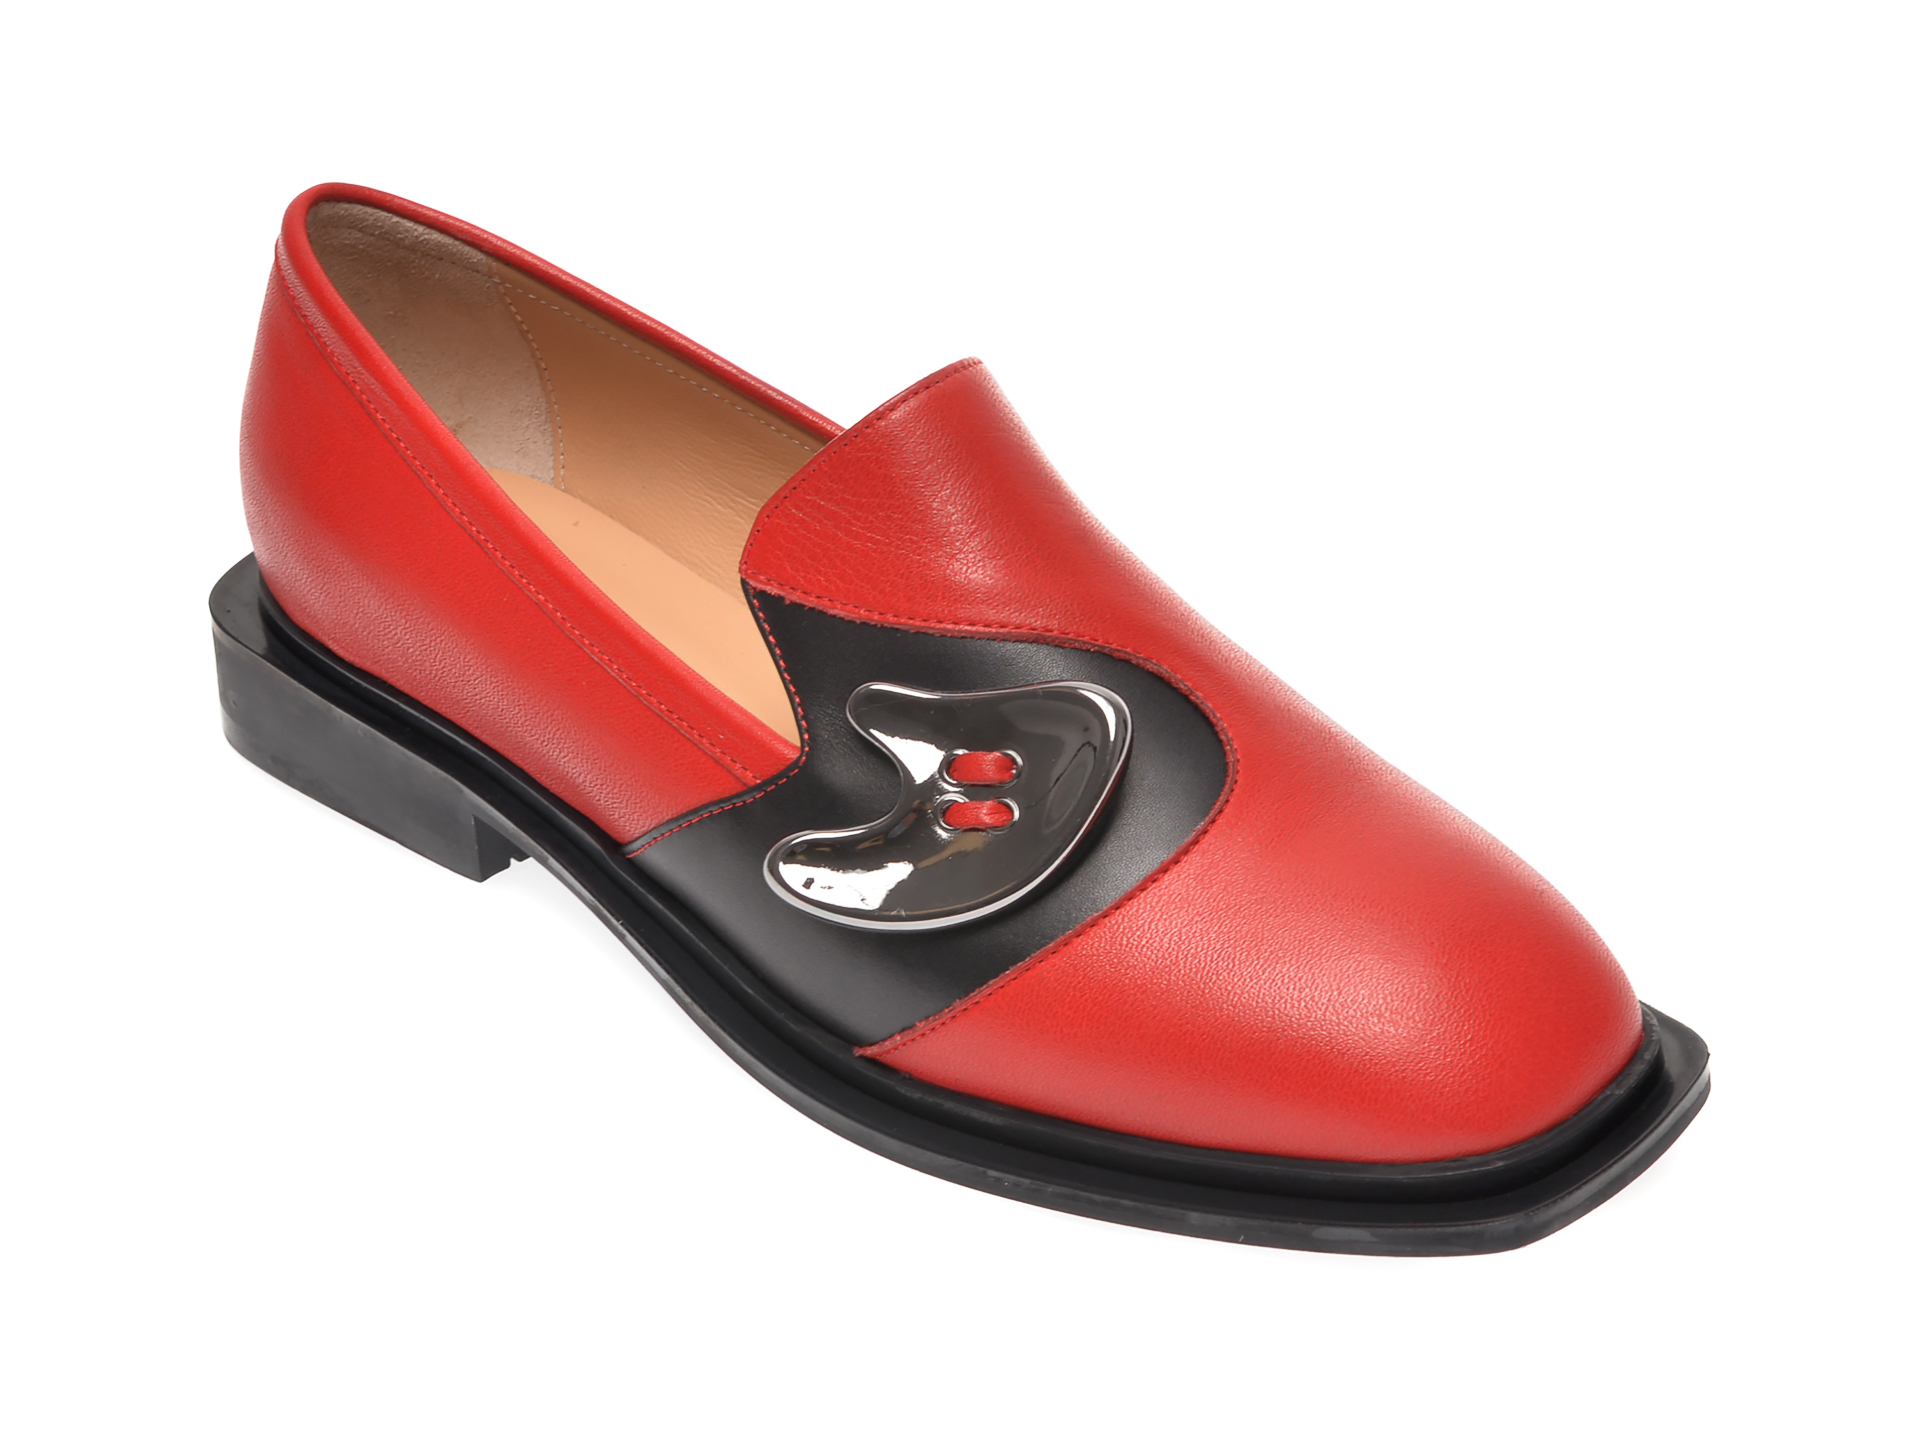 Pantofi FLAVIA PASSINI rosii, LV673, din piele naturala